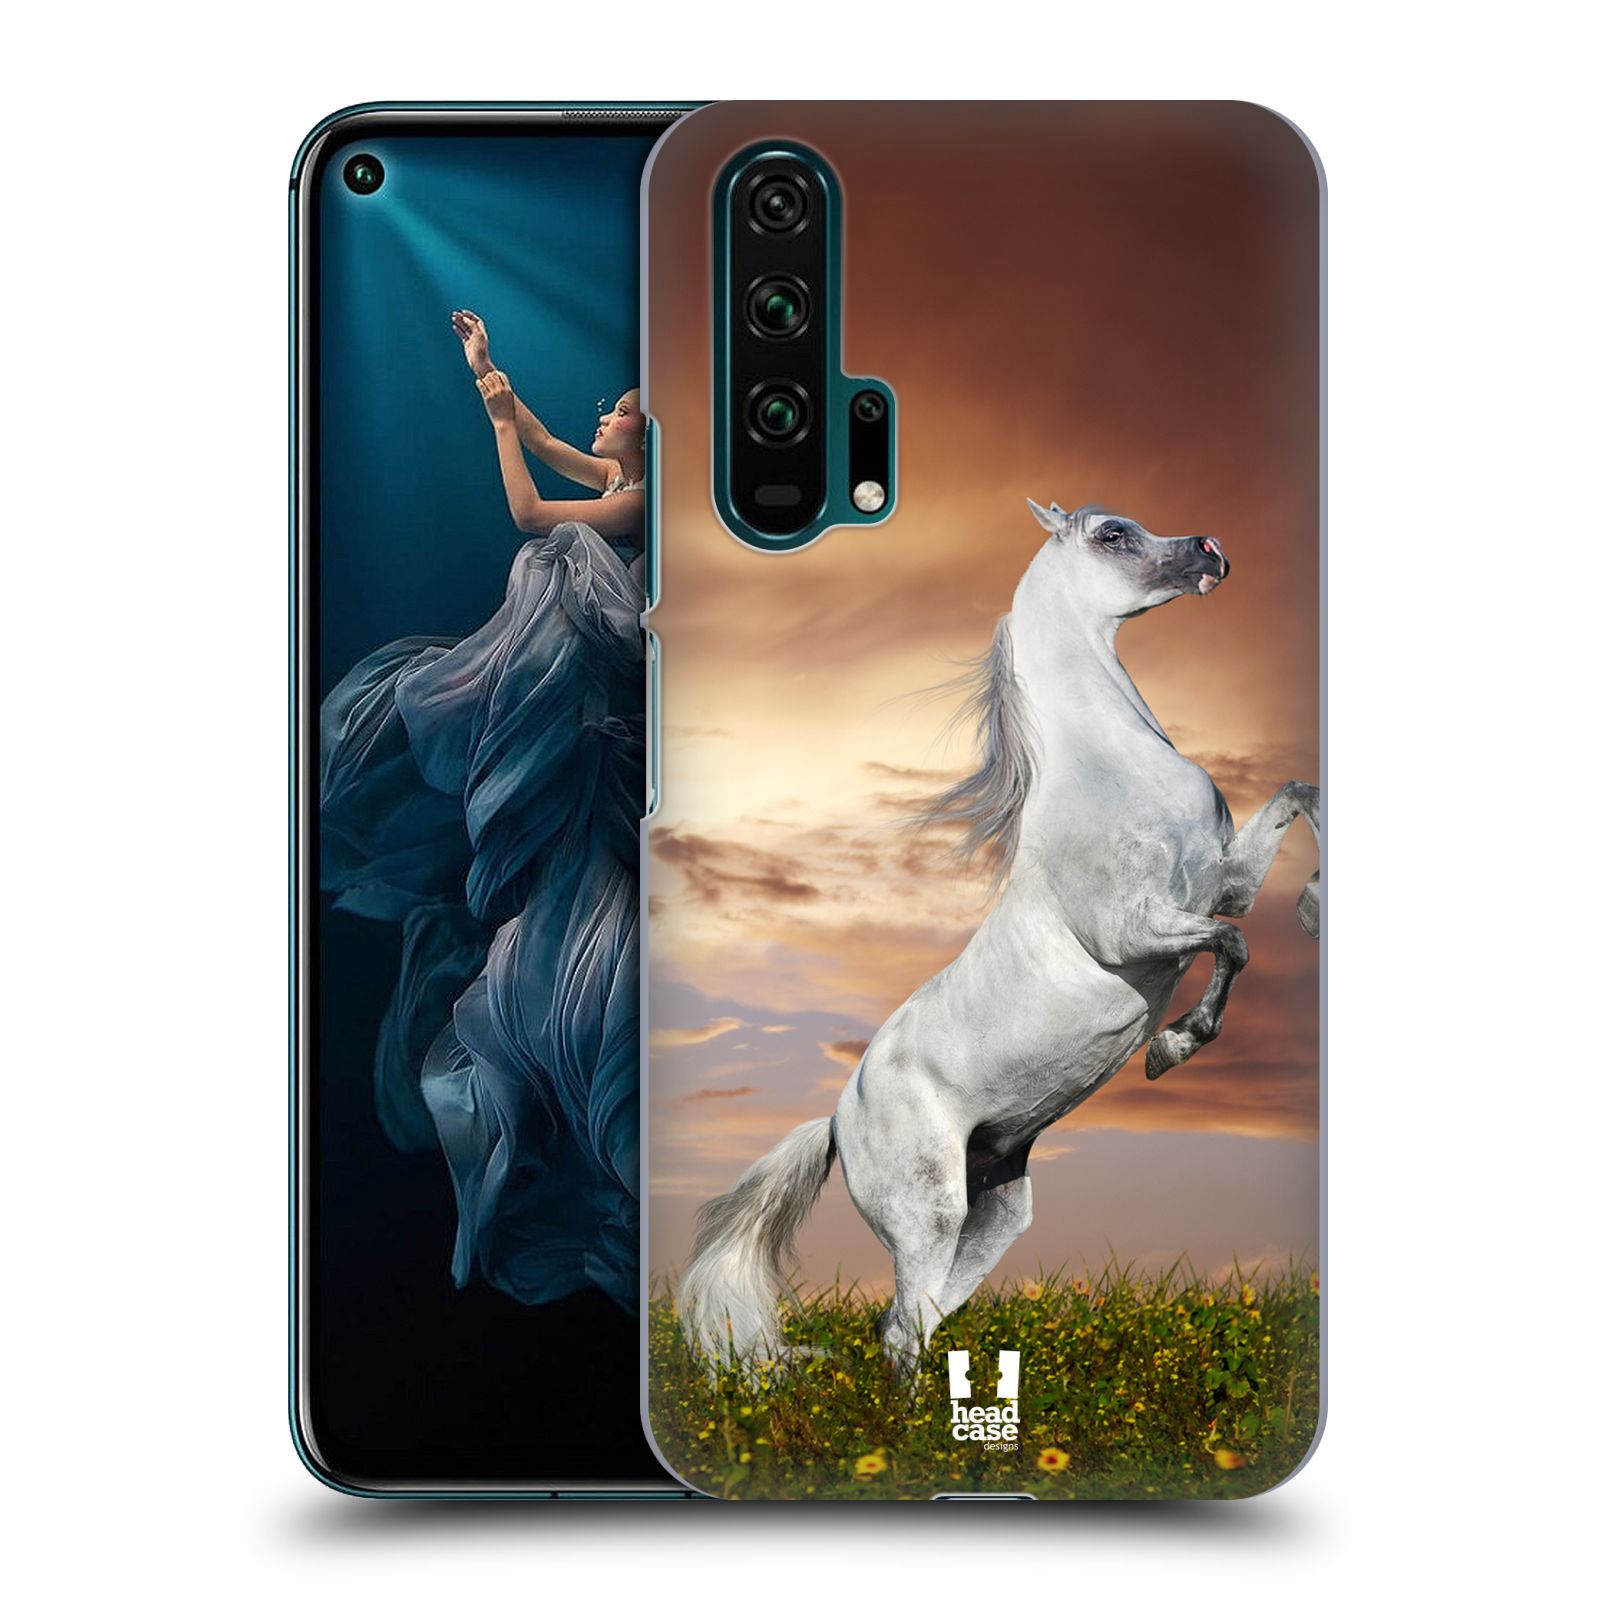 Zadní obal pro mobil Honor 20 PRO - HEAD CASE - Svět zvířat divoký kůň